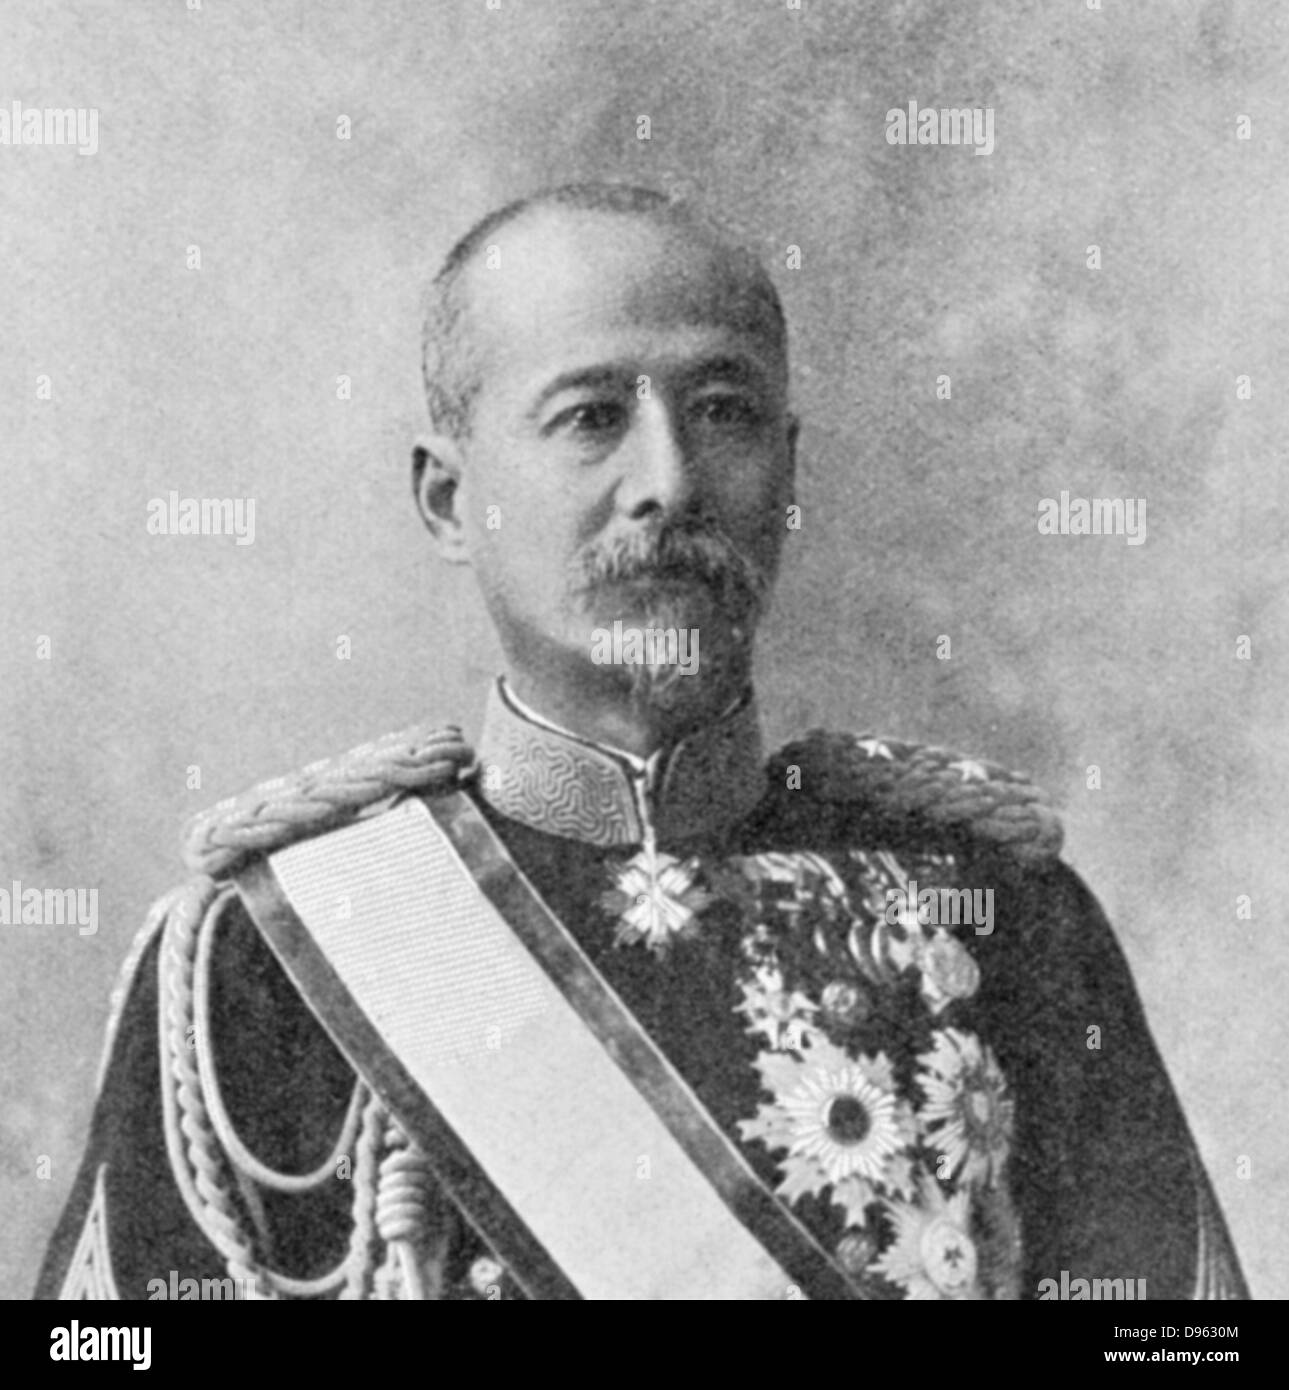 Kodama Gentaro (1852-1905) japanische Soldat und Staatsmann, für japanische Sieg in der Mandschurei während des Russisch-Japanischen Krieges 1904-1905 verantwortlich. Stockfoto